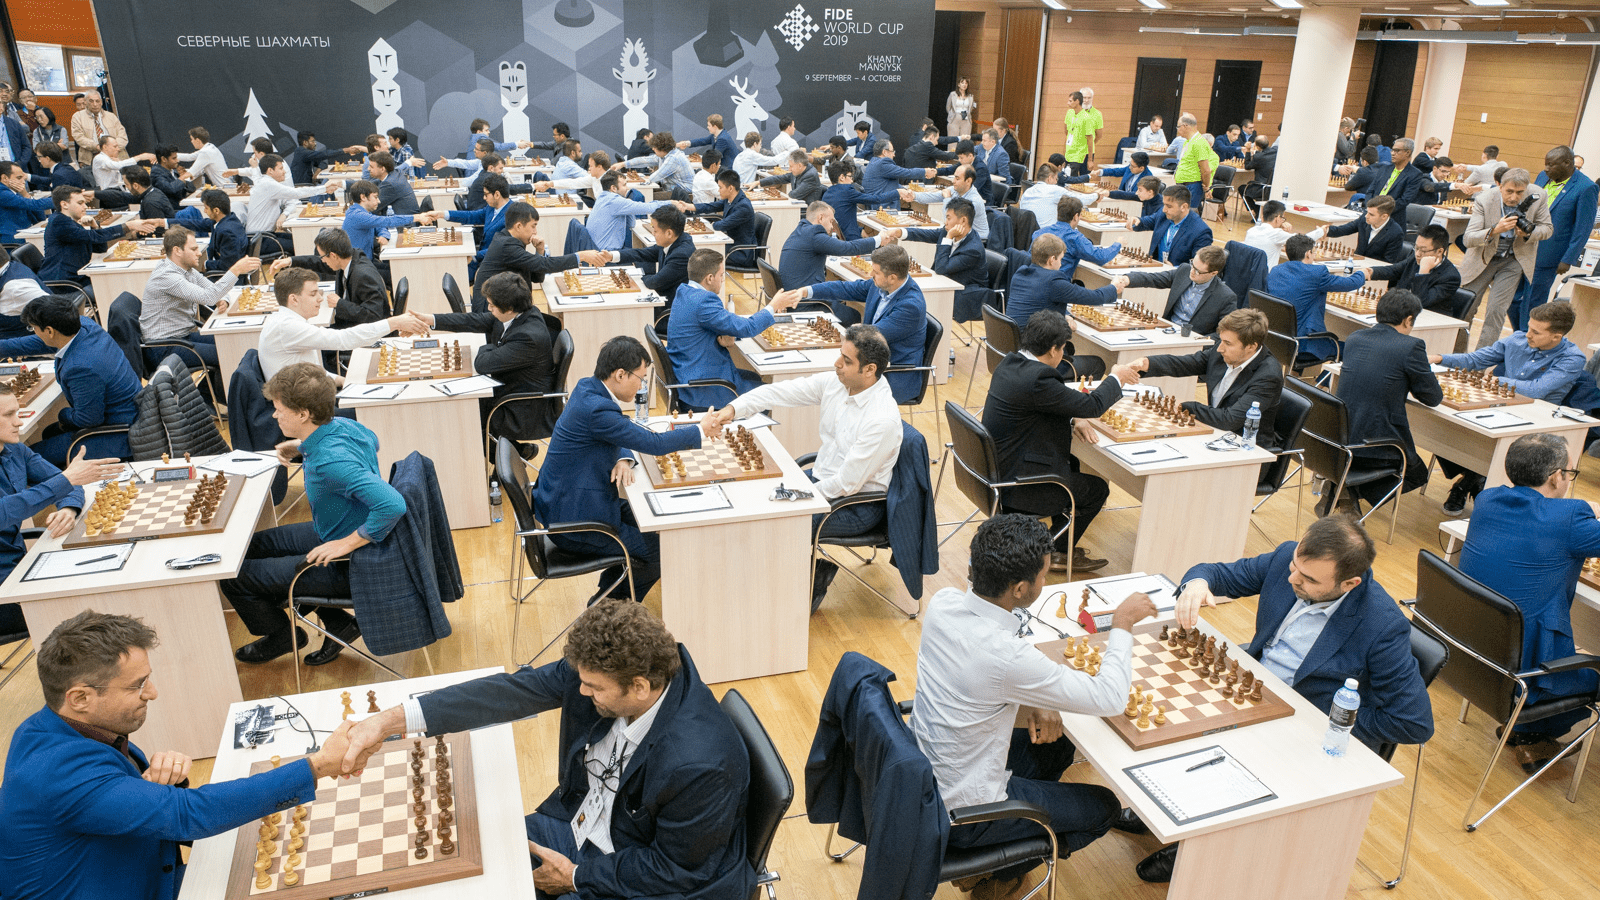 SAIU a PRIMEIRA VITÓRIA! Mundial de Xadrez da FIDE - R2 